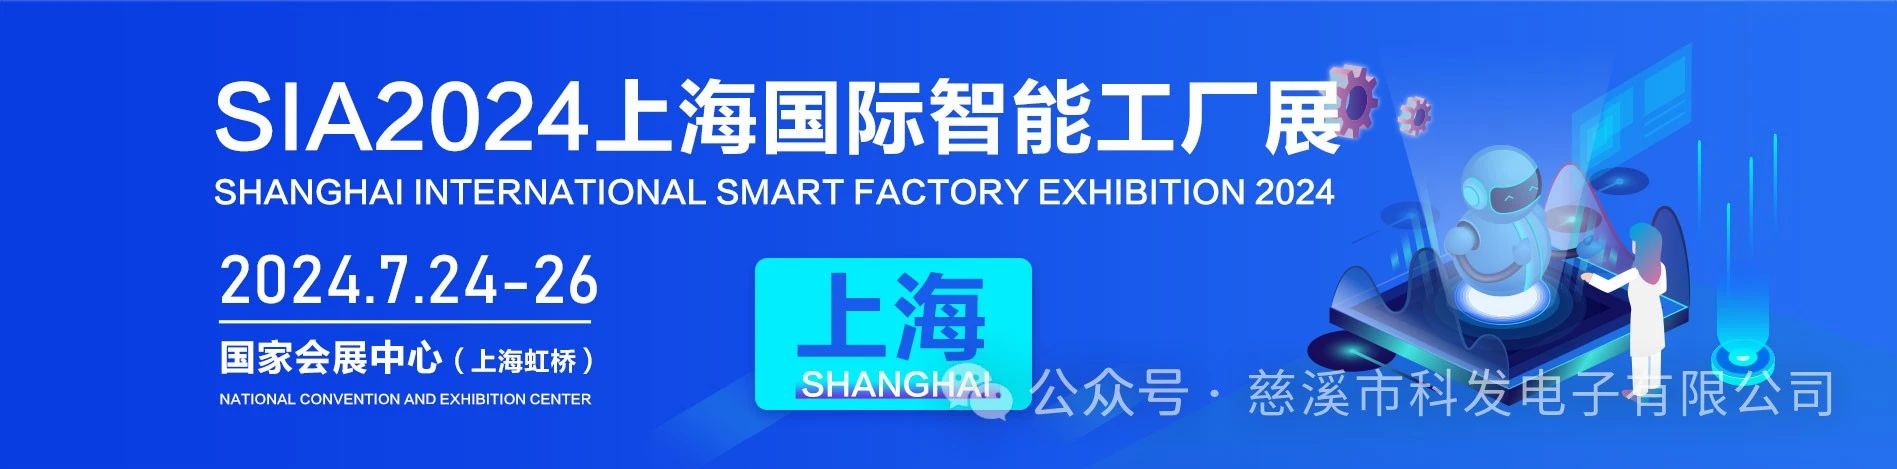 推动制造业，促进制造技术|科发电子邀您参加上海智能工厂展